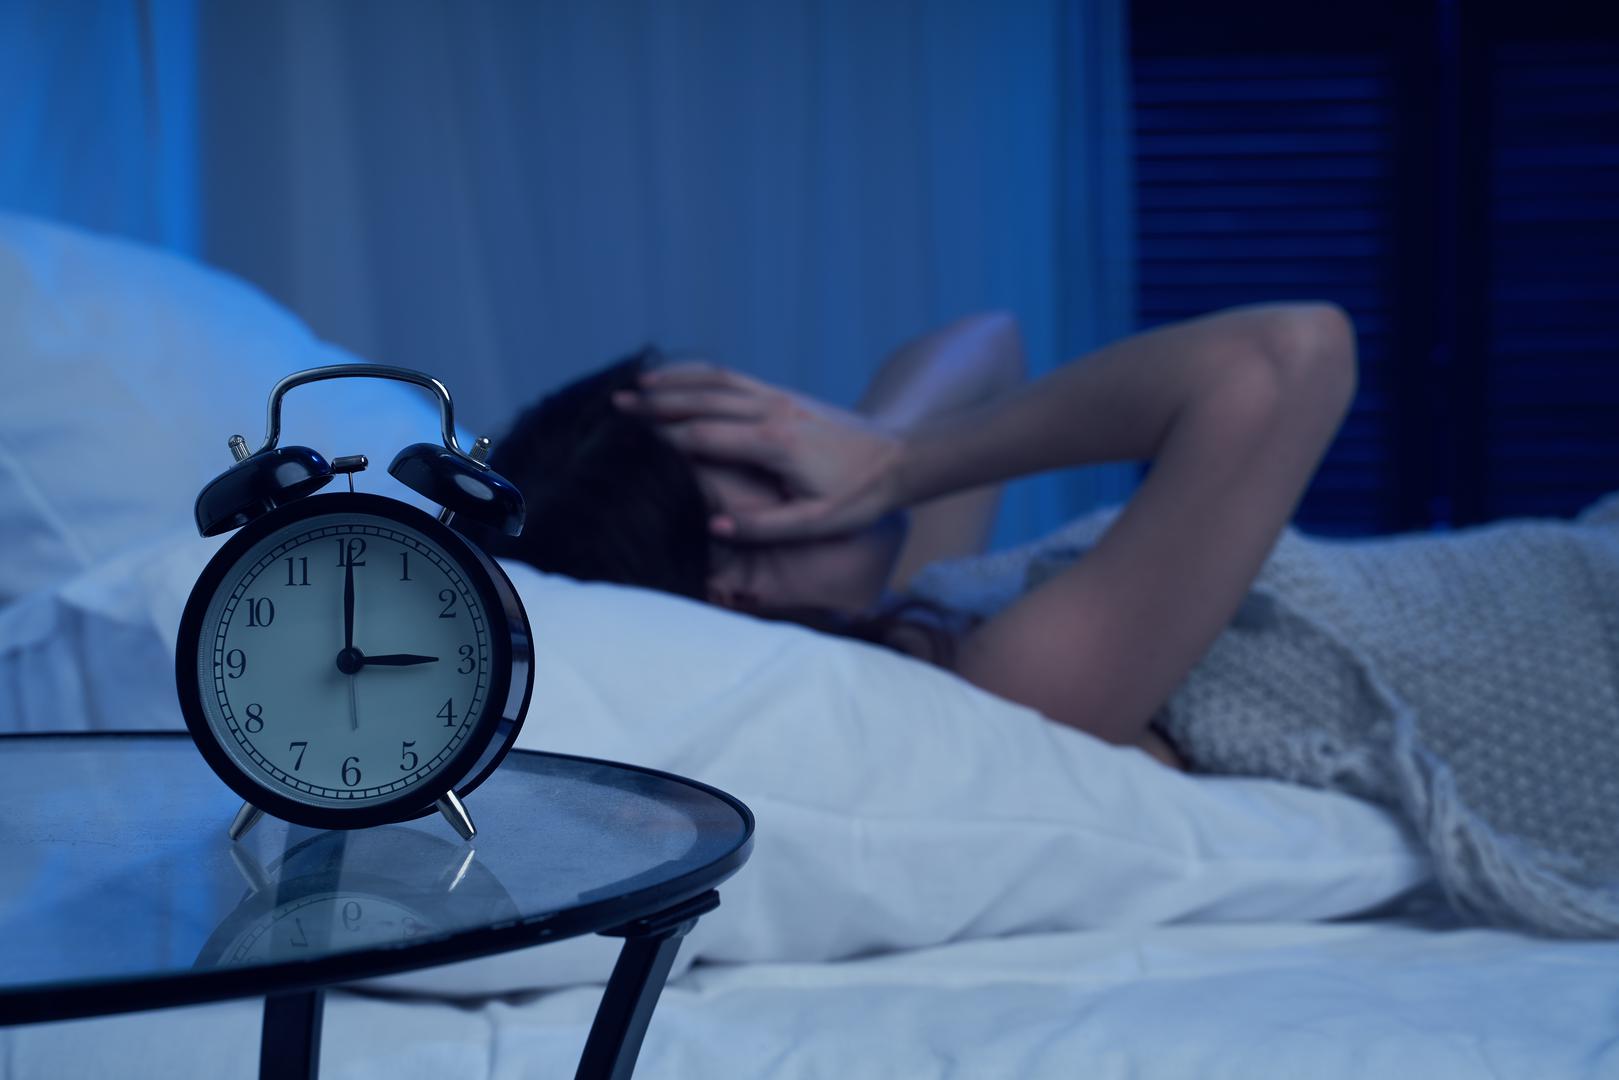 Poteškoće sa spavanjem: NHS upozorava da osobe s ADHD-om također mogu imati poremećaj spavanja i anksioznost. Također, stručnjaci su upozorili da može doći do poremećaja u cirkadijalnom ritmu vašeg tijela, što može rezultirati time da osoba uporno odgađa spavanje nekoliko sati više od uobičajenog vremena za odlazak u krevet.